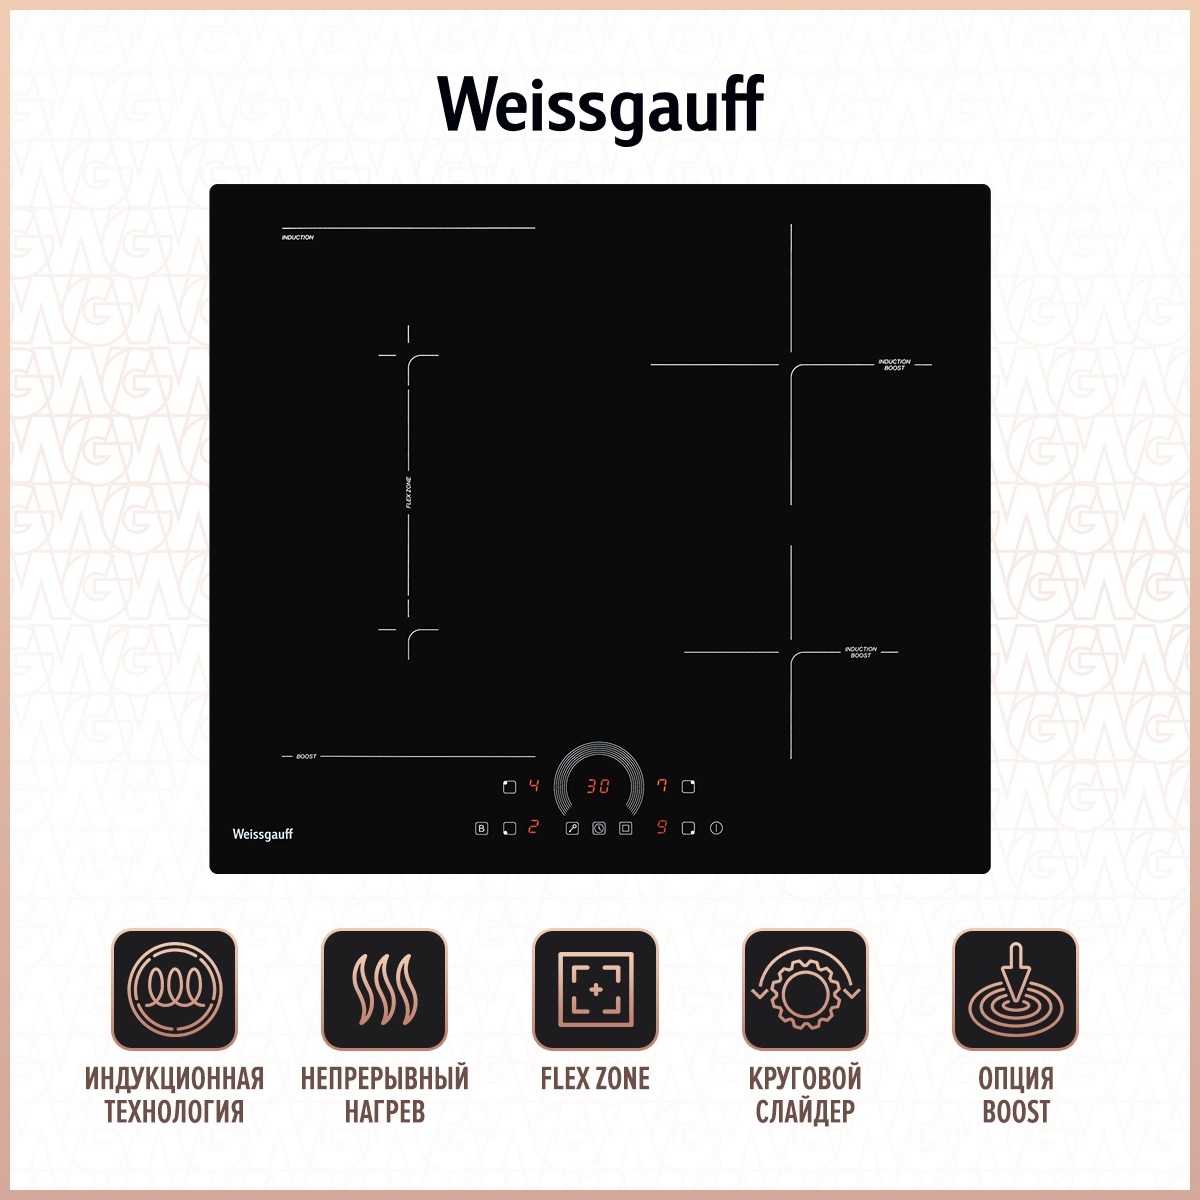 Встраиваемая варочная панель индукционная Weissgauff HI 643 BFZC черный встраиваемая варочная панель индукционная hansa bhi68611